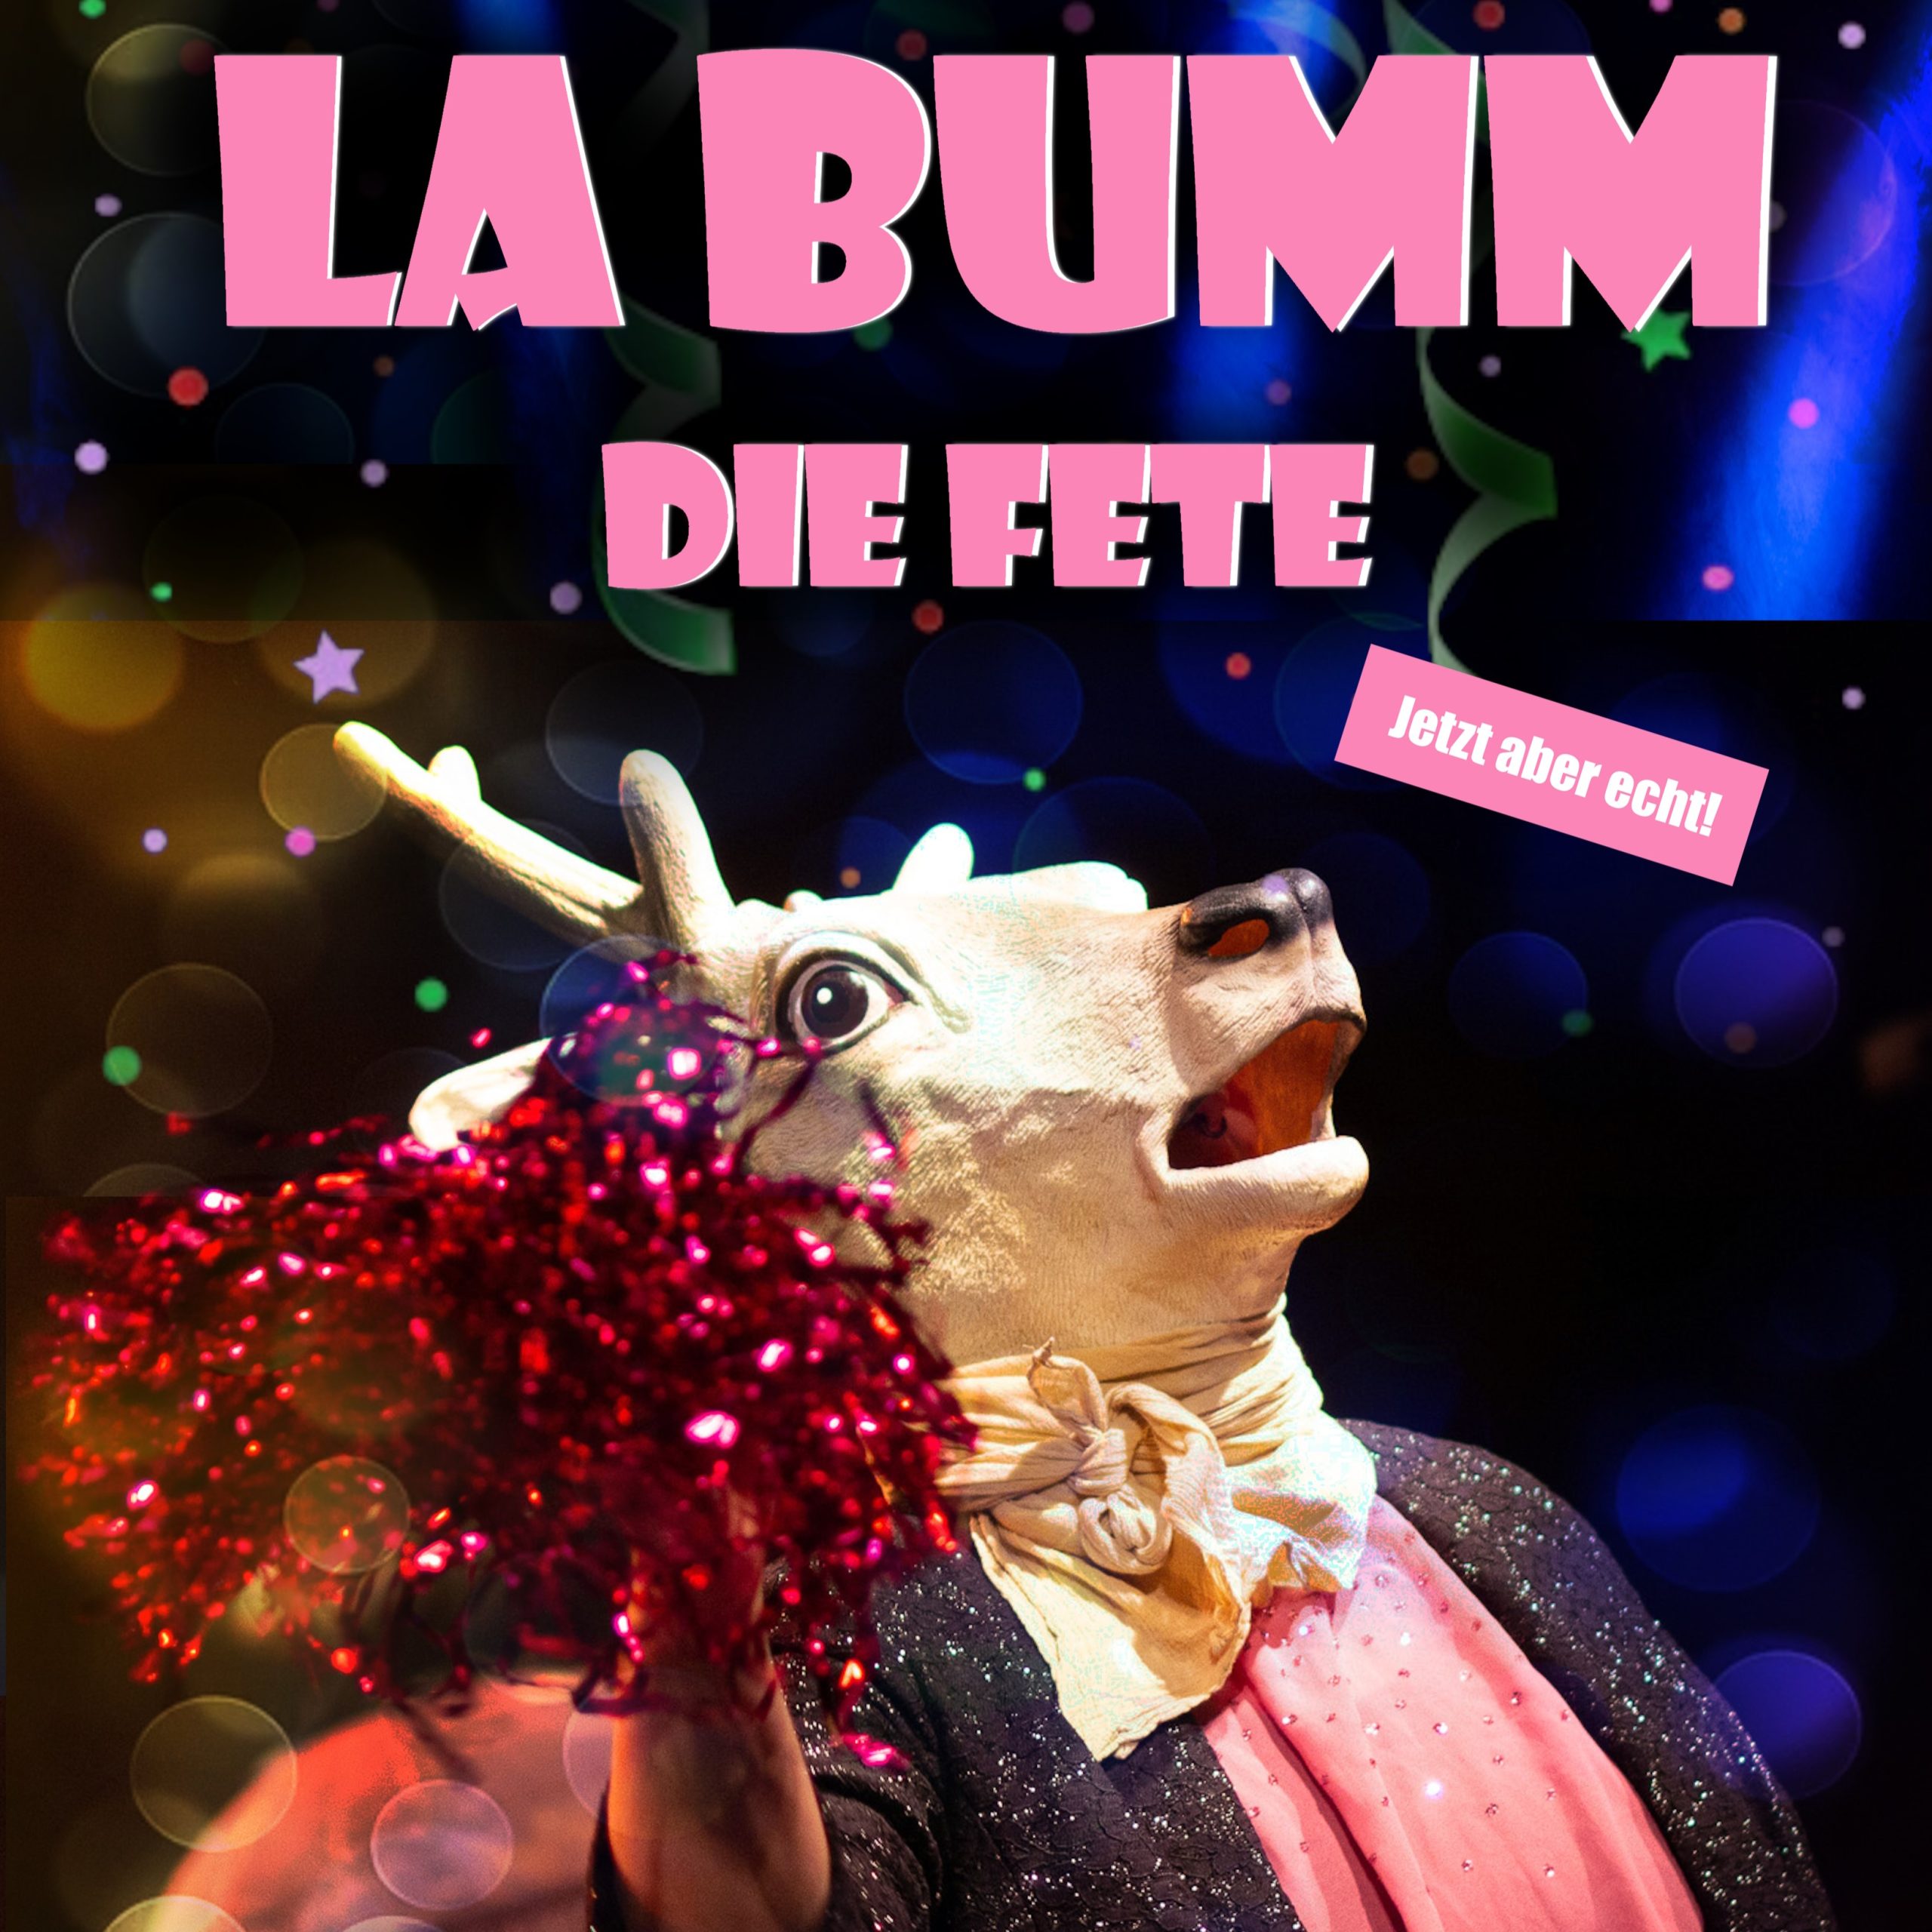 Plakat von La Bumm, die Fete. Eine Person mit Hirschmaske und Glitzerkleidung schaut nach oben. Der Mund der Maske ist geöffnet.